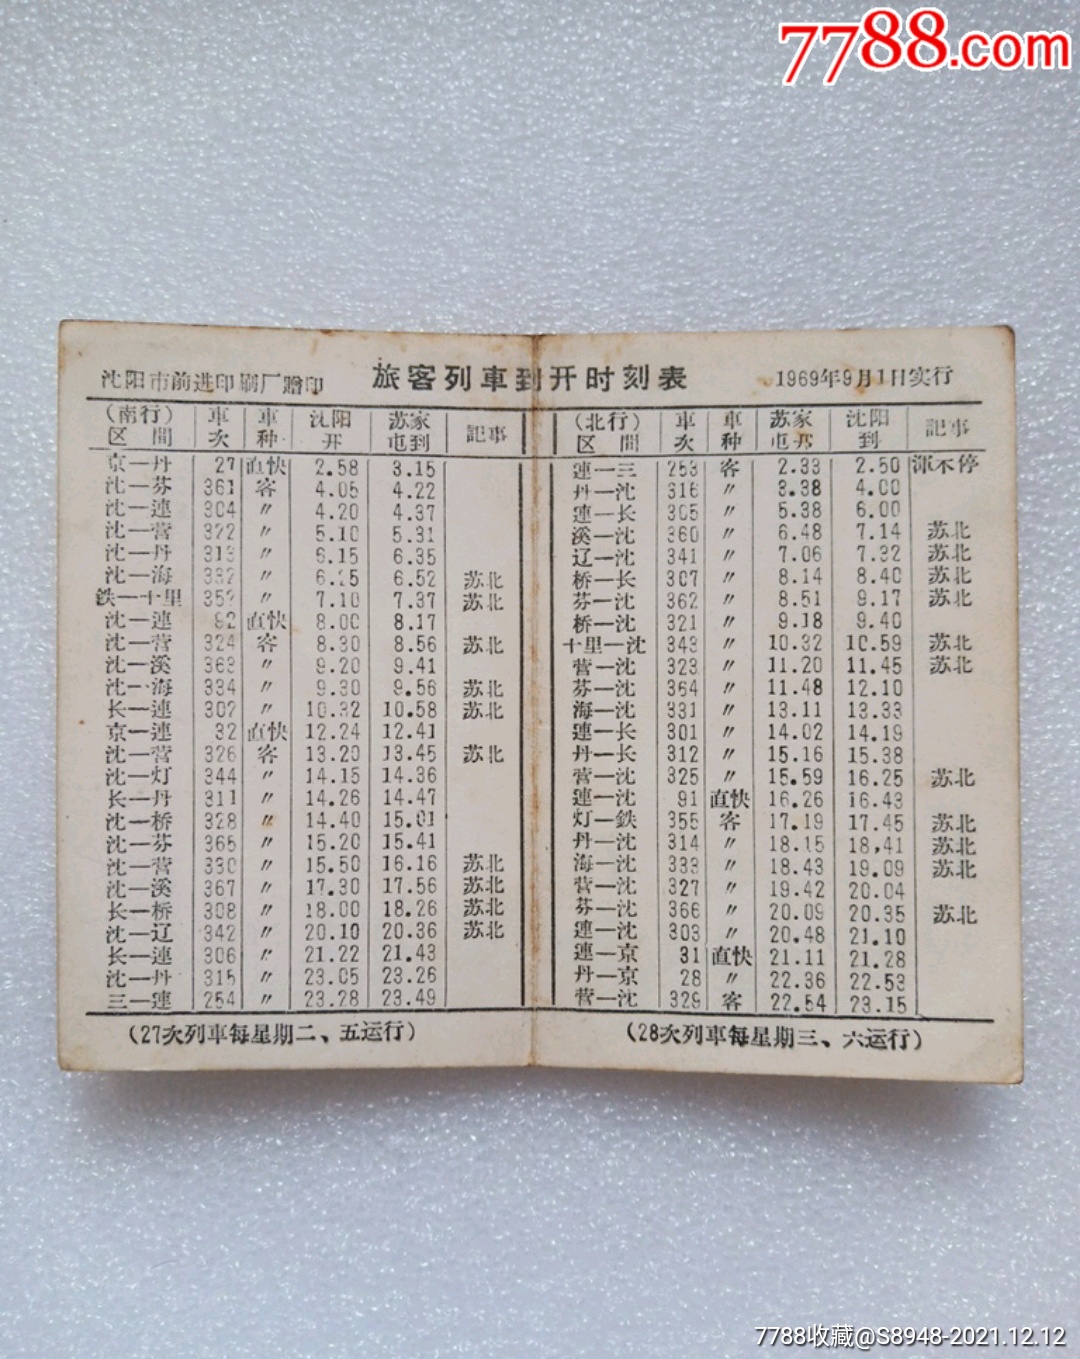 1969年沈阳旅客列车到开时刻表